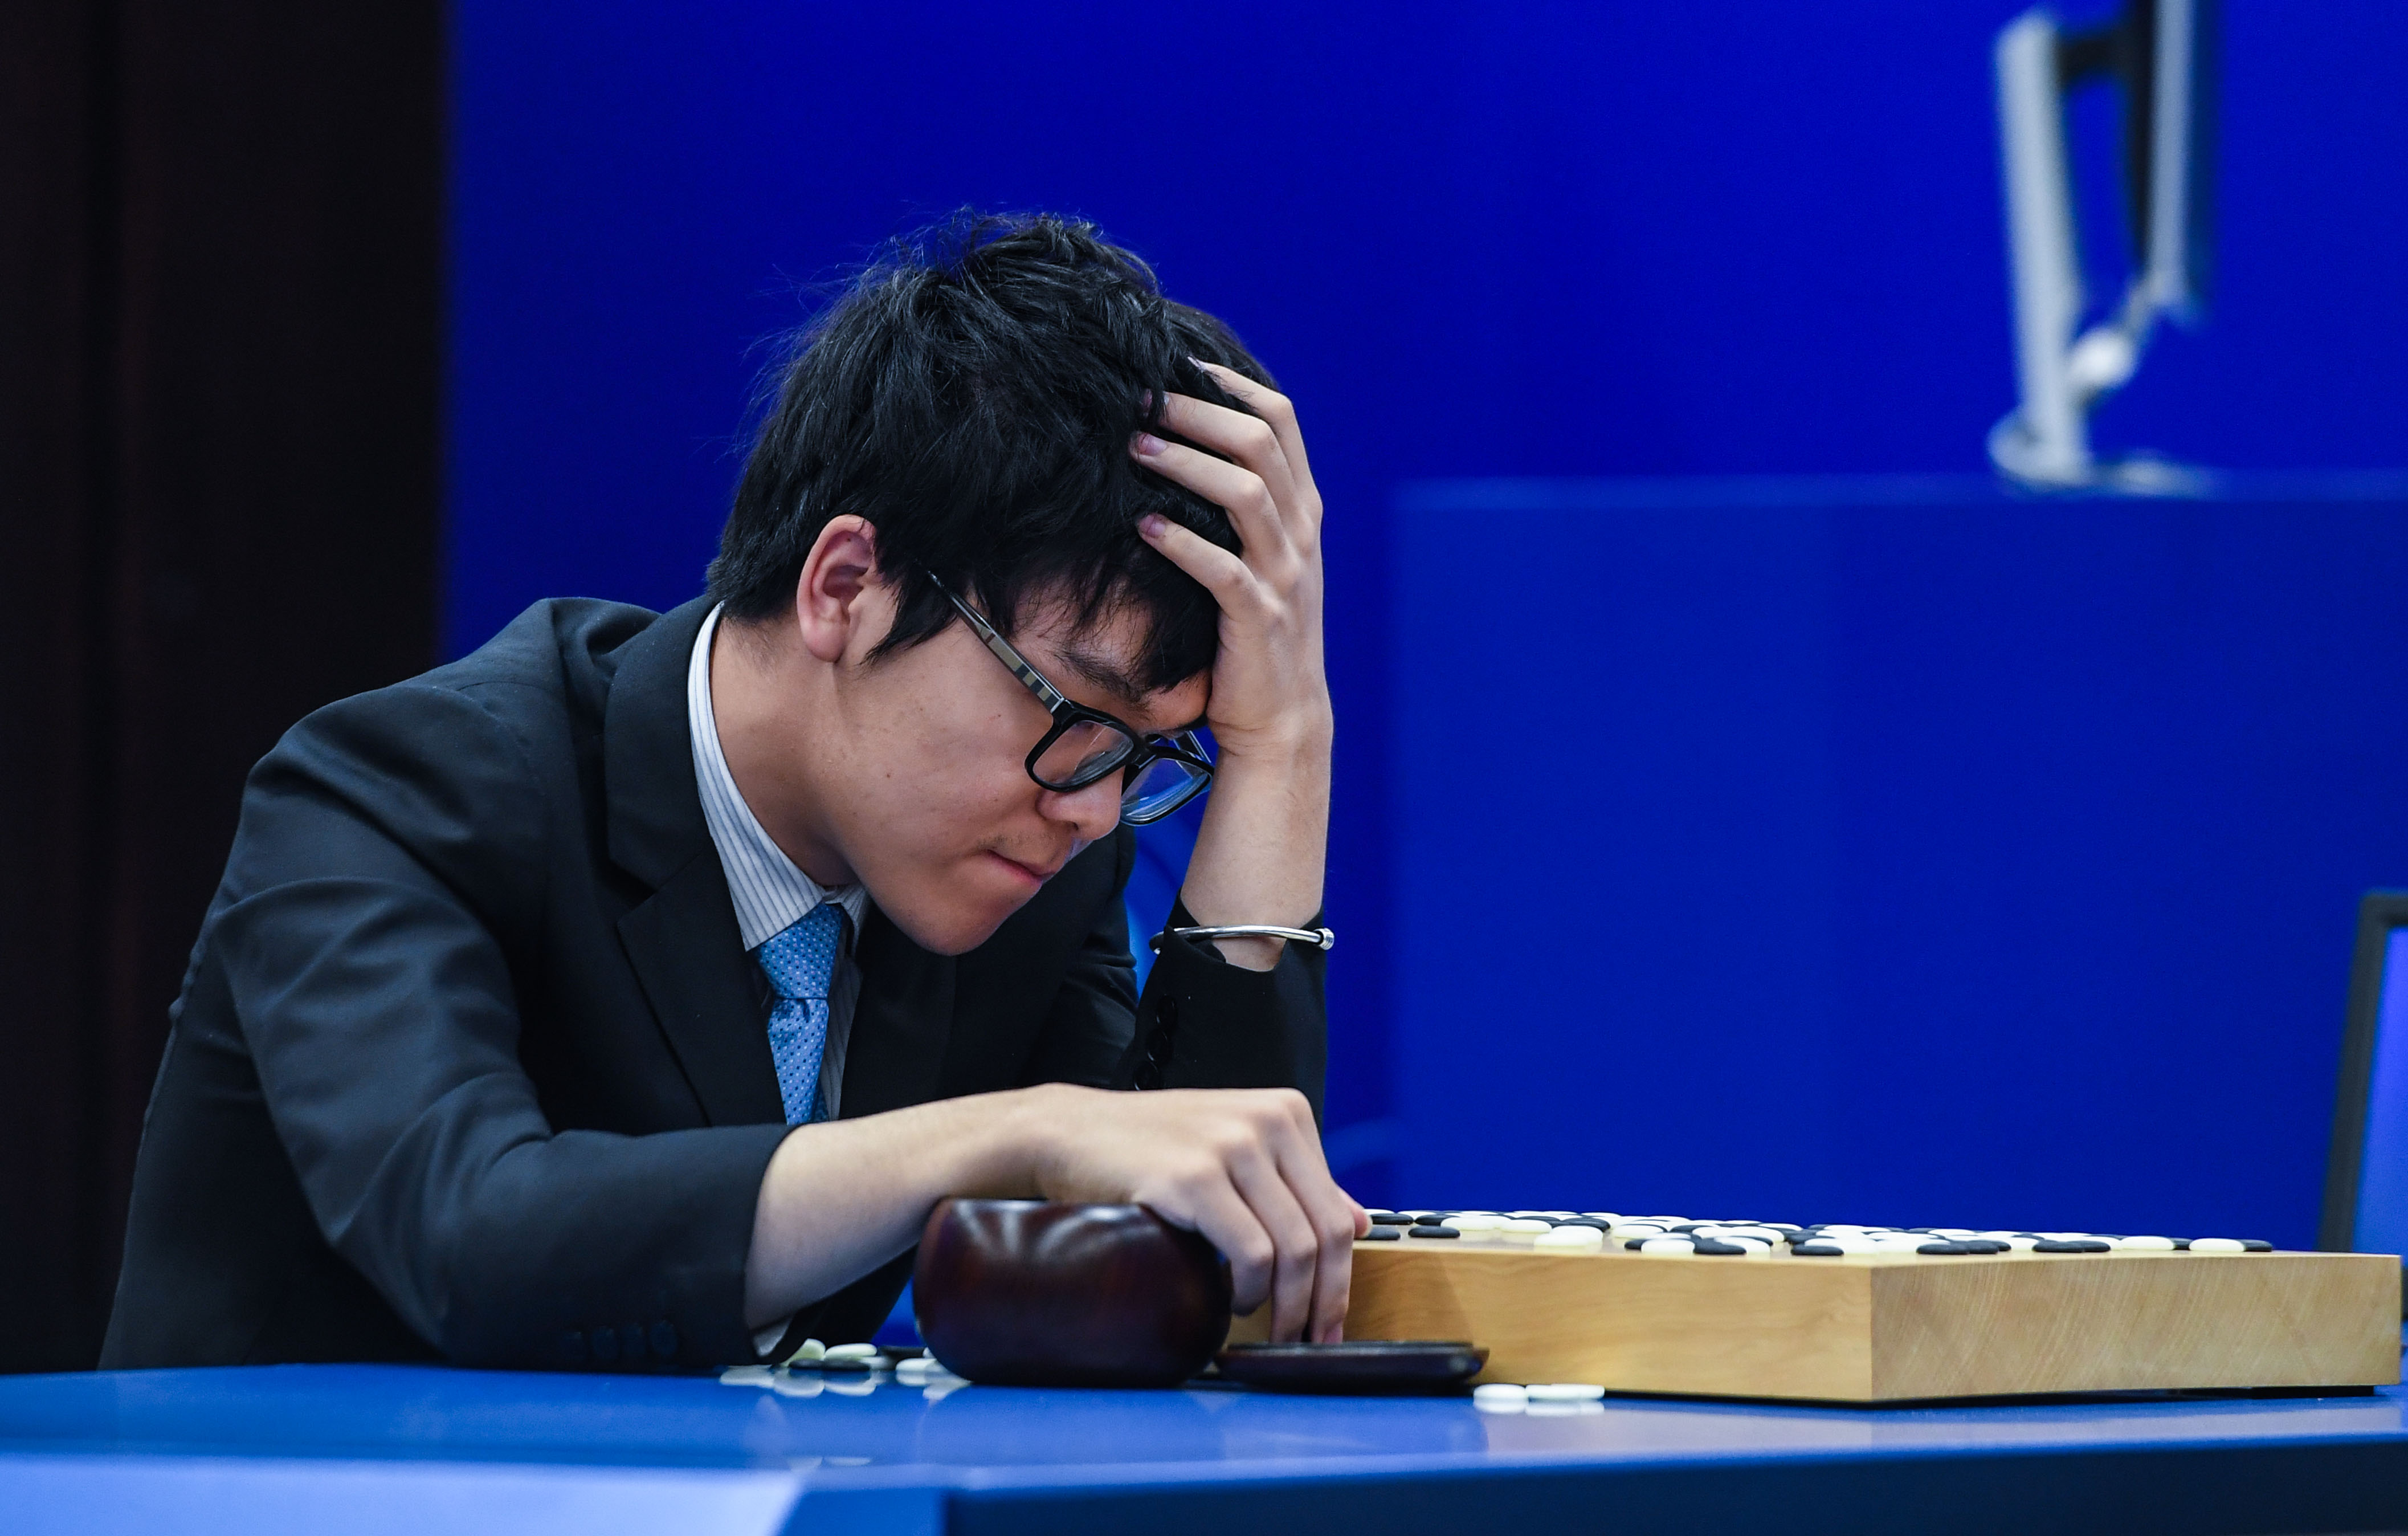 去年，中國排名第一的職業九段棋手柯潔跟AlphaGo作人機圍棋大戰，結果柯潔三連敗，不敵AlphaGo。（新華社資料圖片）